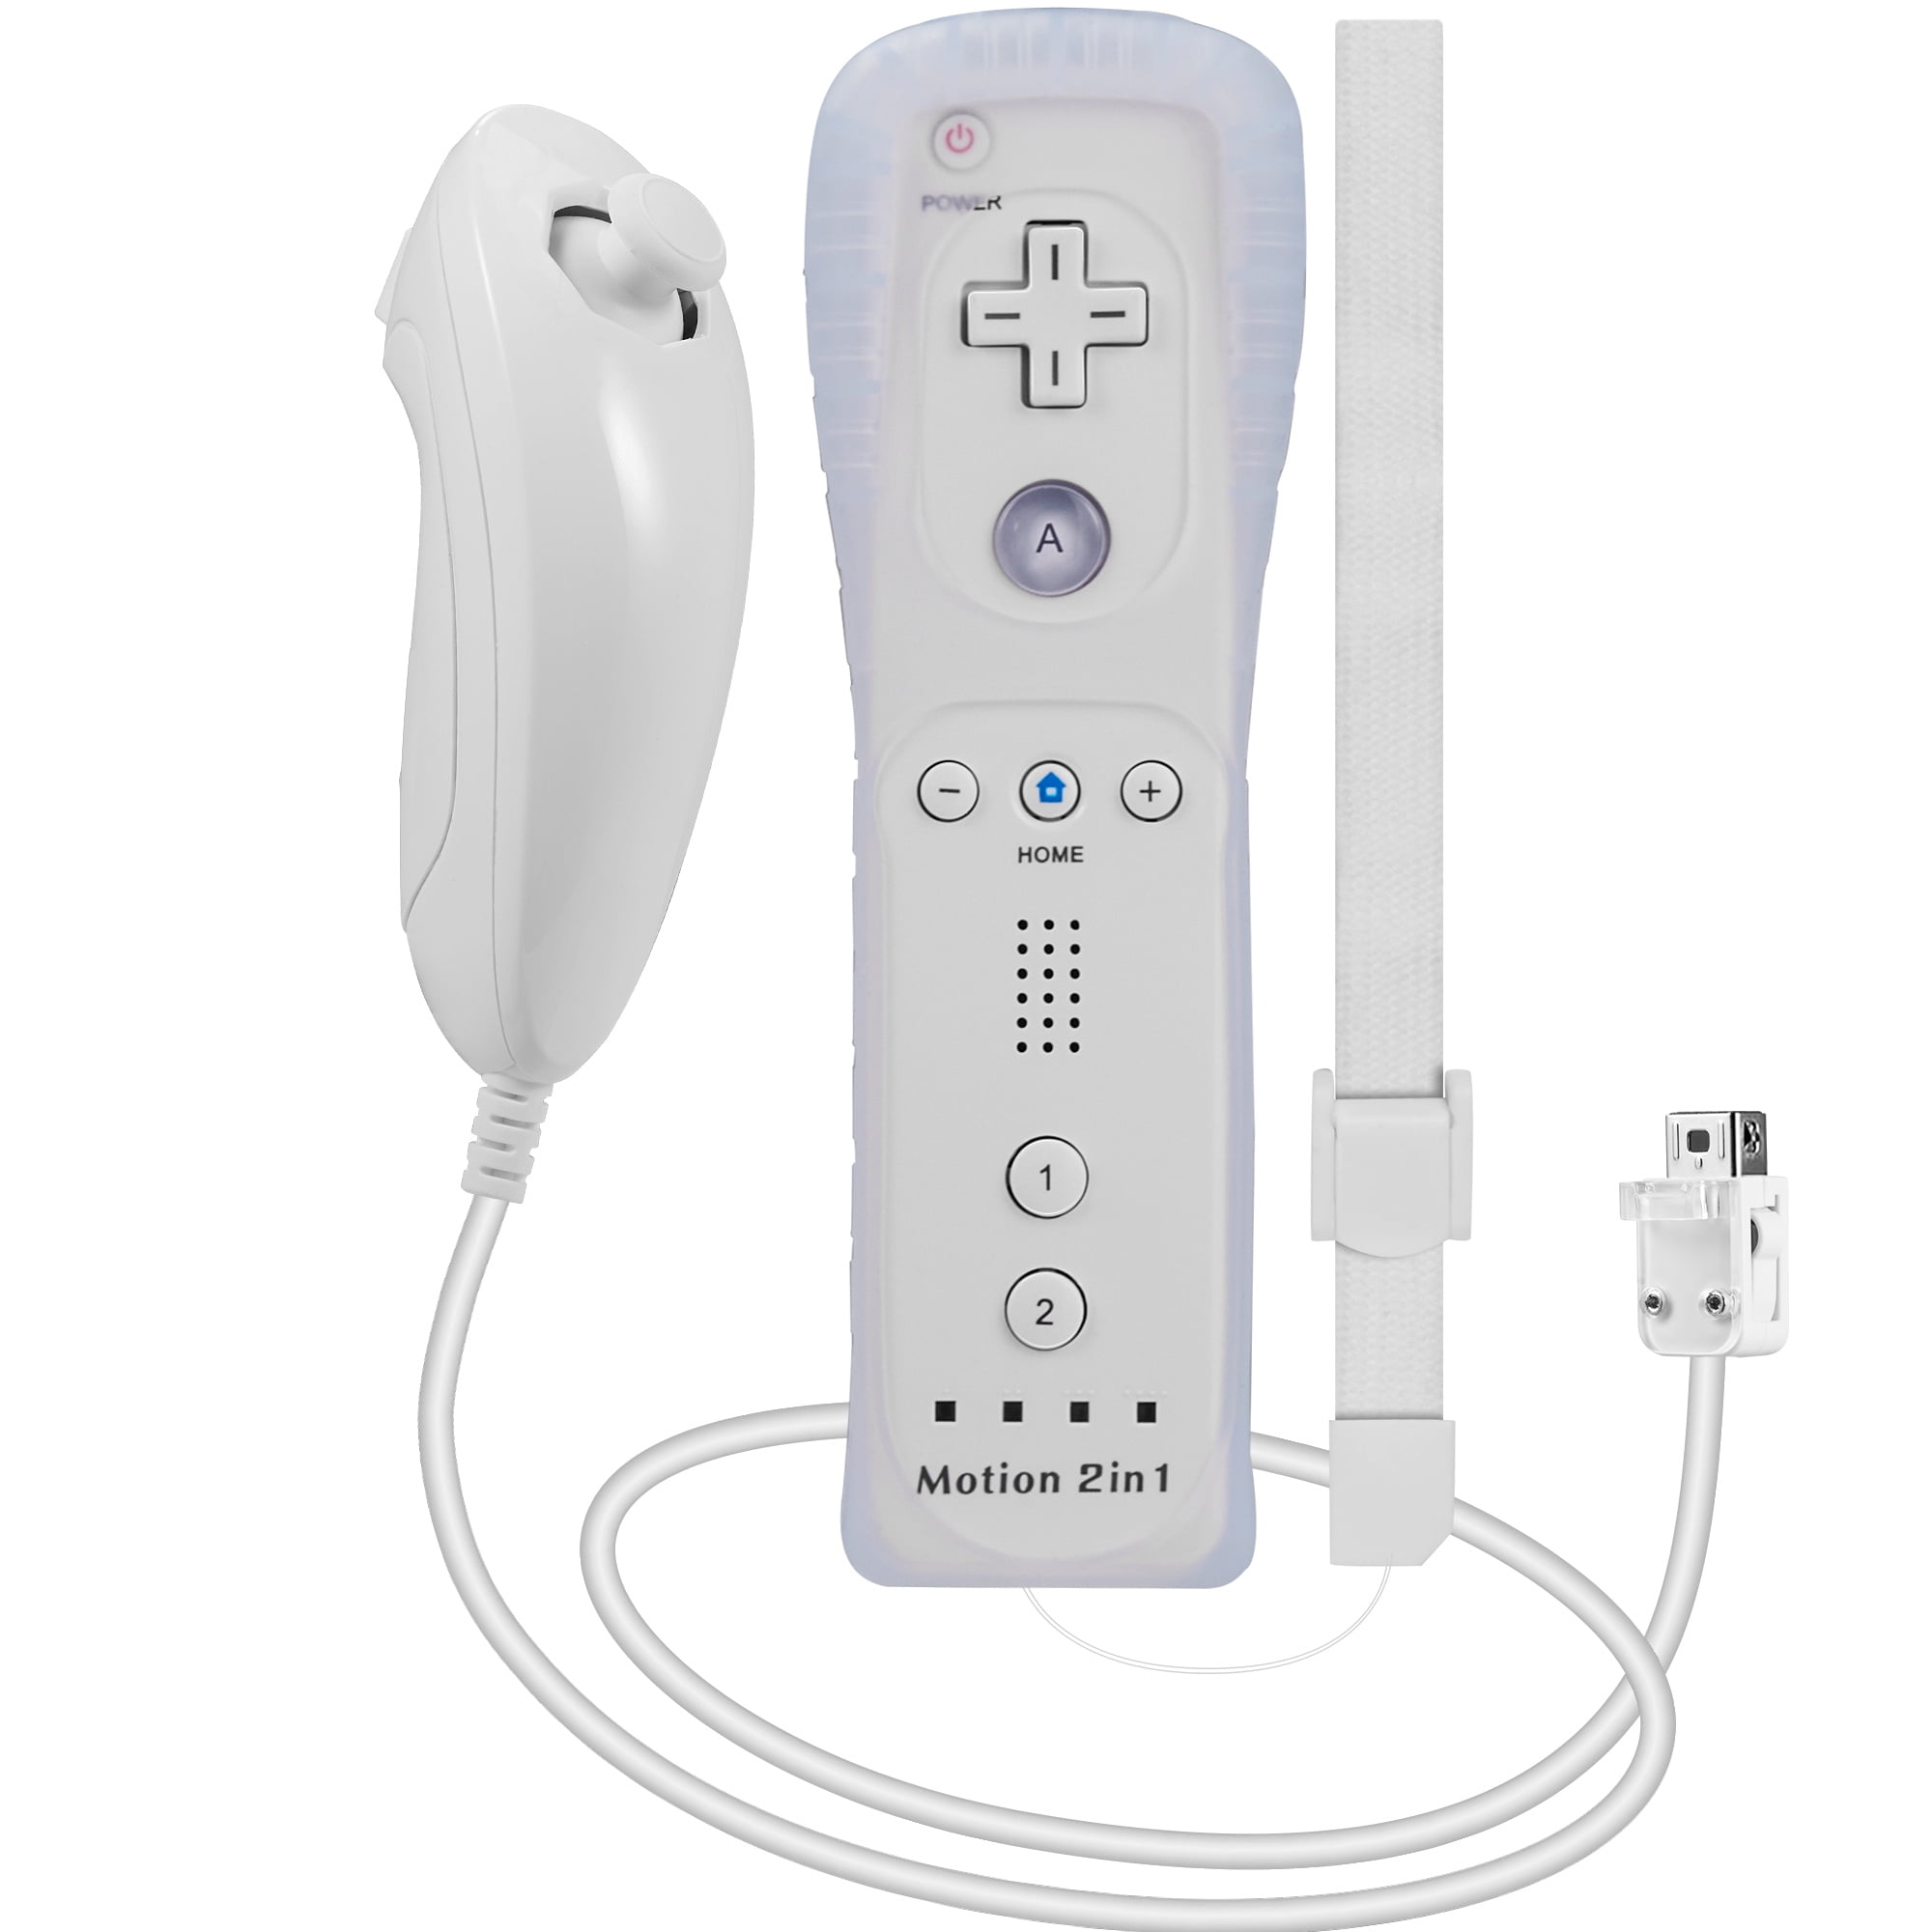 Retirarse aumento Año nuevo Luxmo Remote& Nunchuck Motion Plus Controller Combo Set for Wii / Wii U  Console Video Game - Walmart.com